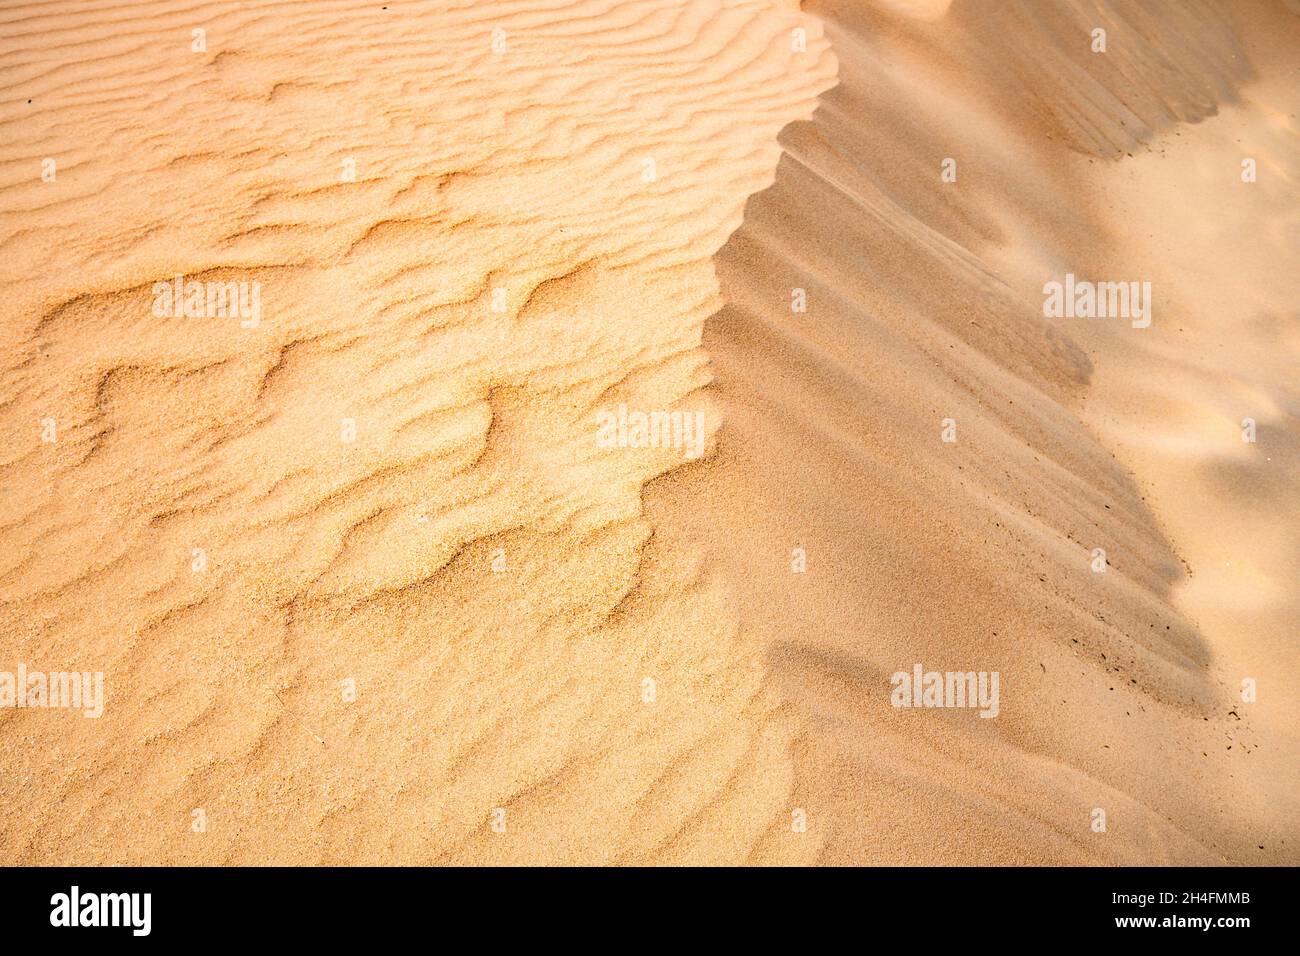 texture di sabbia gialla del deserto con piccola duna formata dall'aria Foto Stock